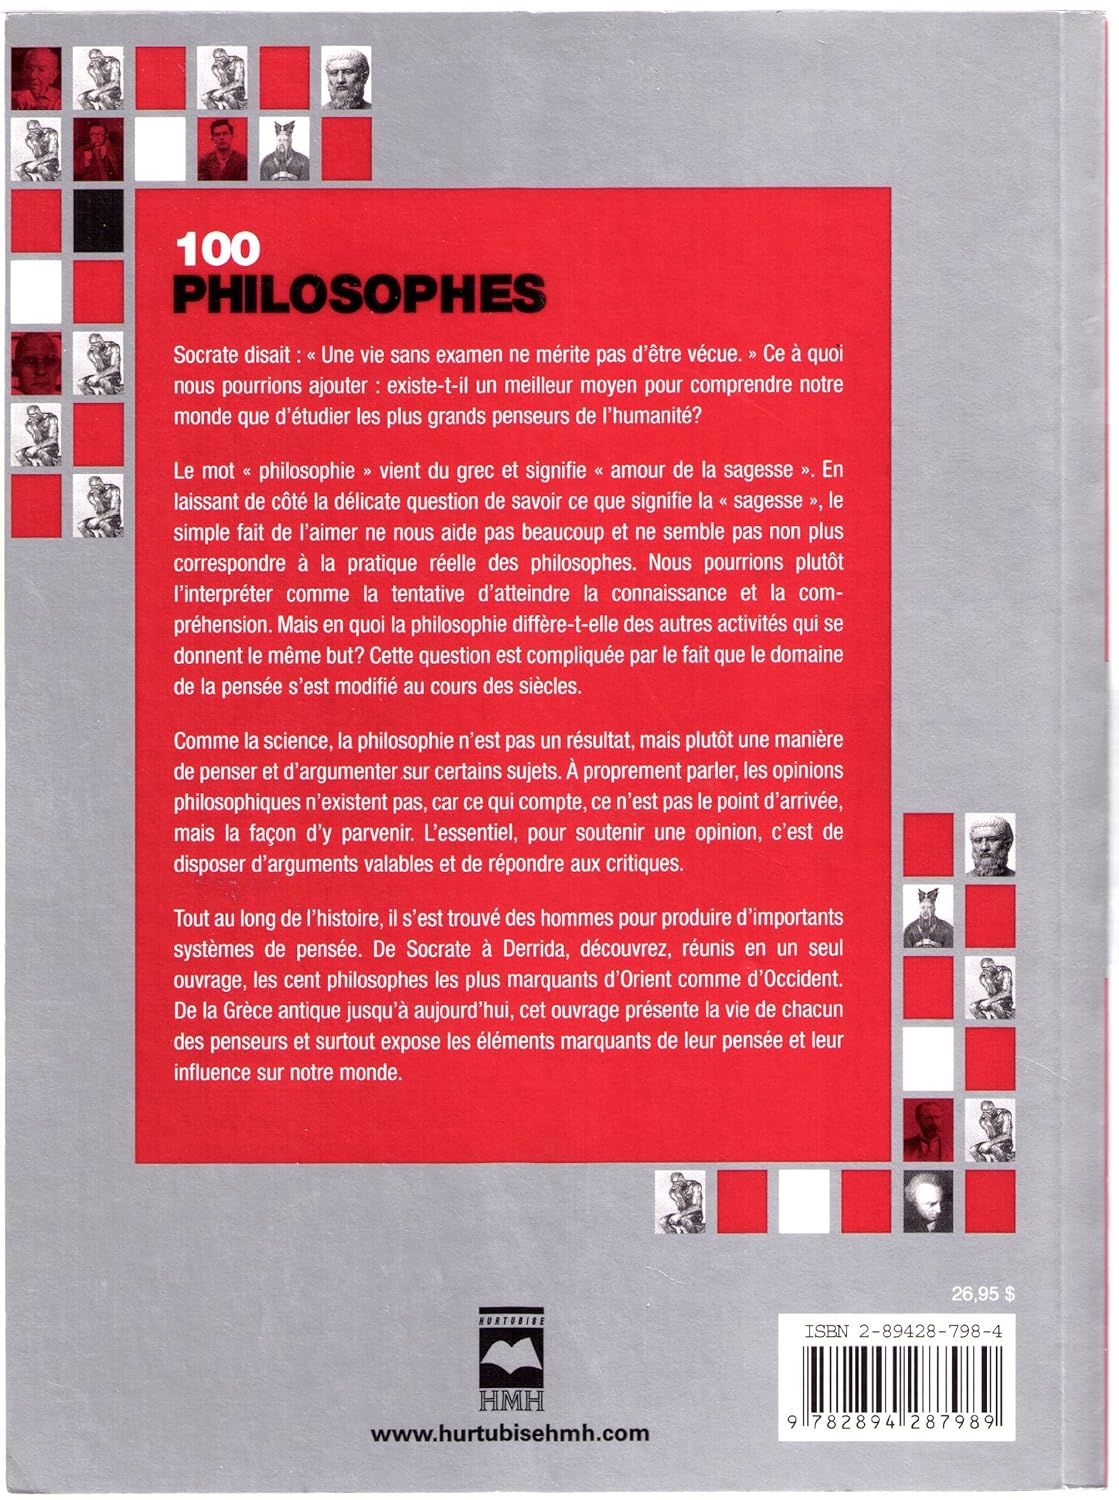 100 philosophes : Guide des plus grands penseurs de l'humanité (Peter J. King)